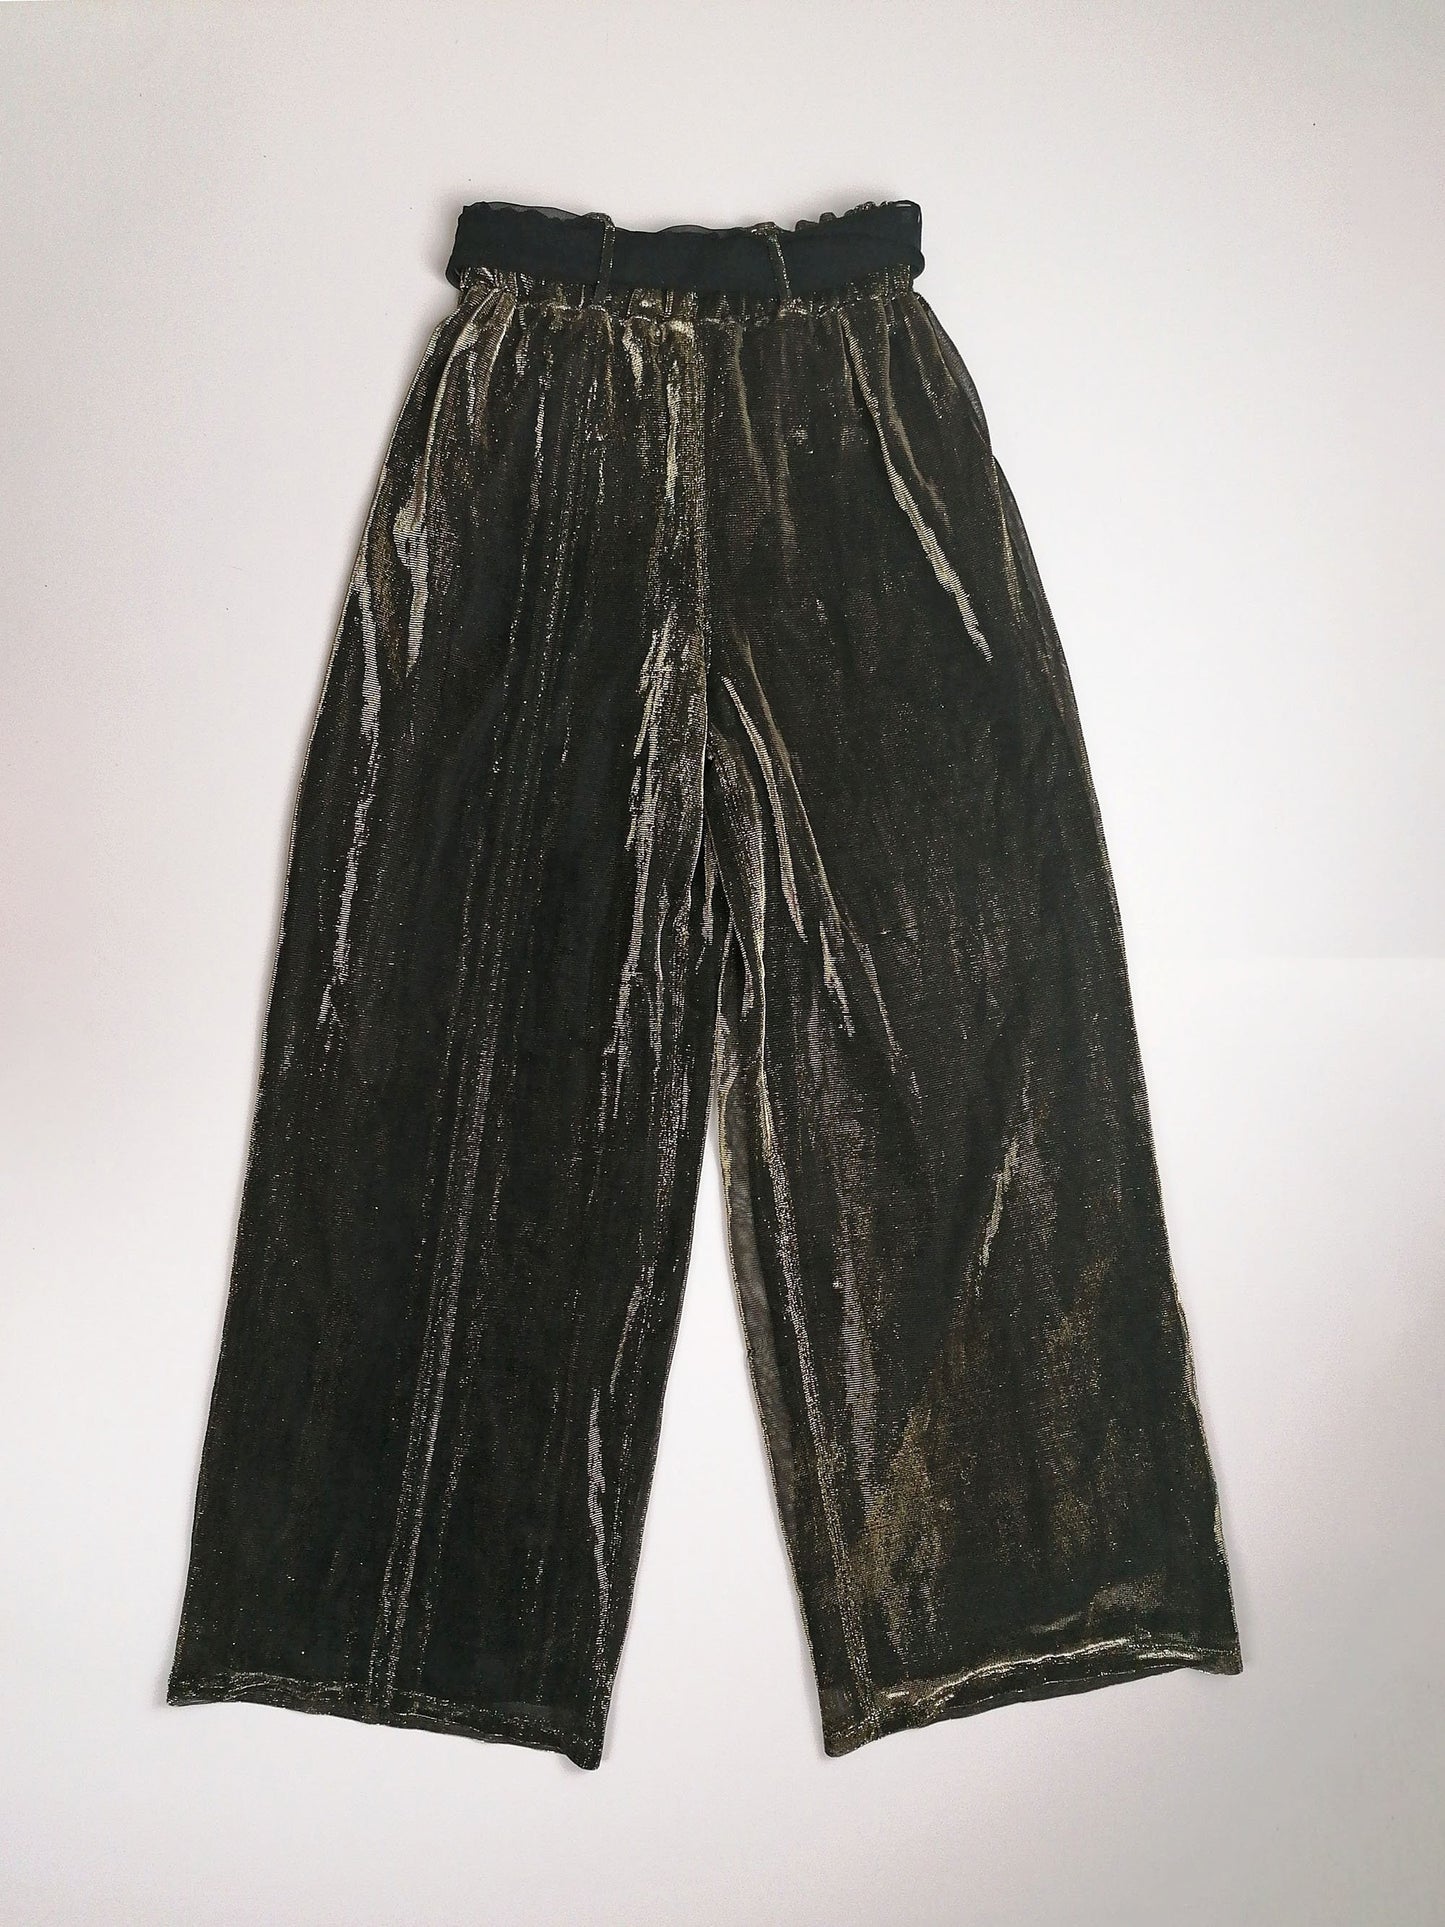 Wide Leg Black Gold Lurex Pants - size S-M